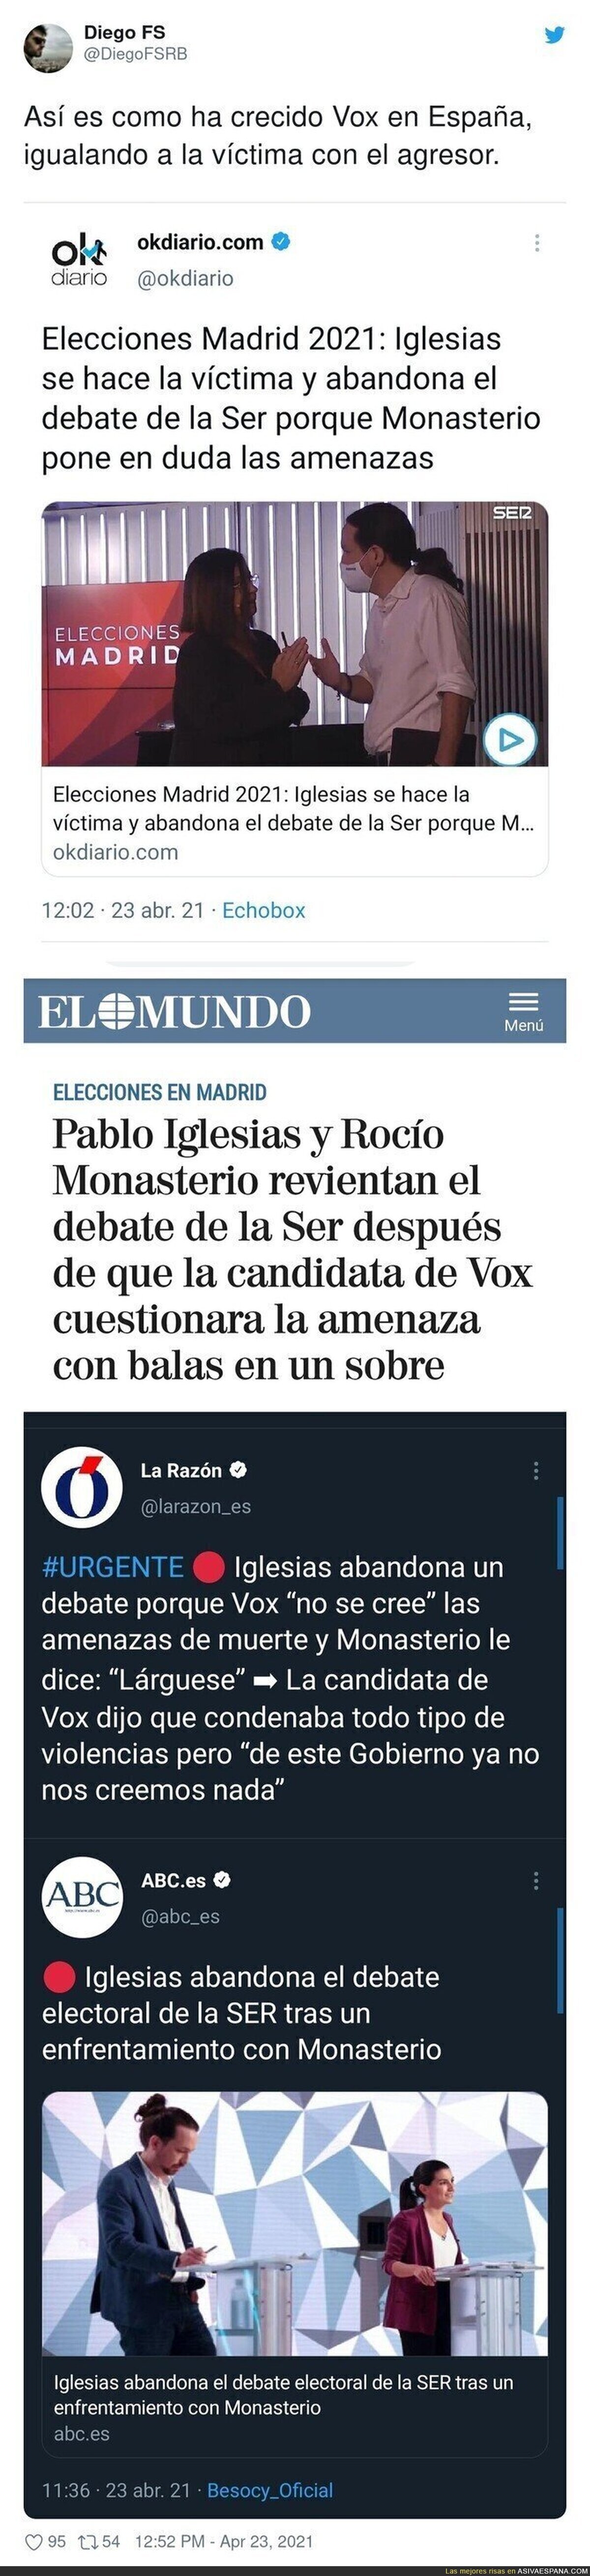 Así se manipula la realidad sobre el incidente de VOX con Podemos en la SER